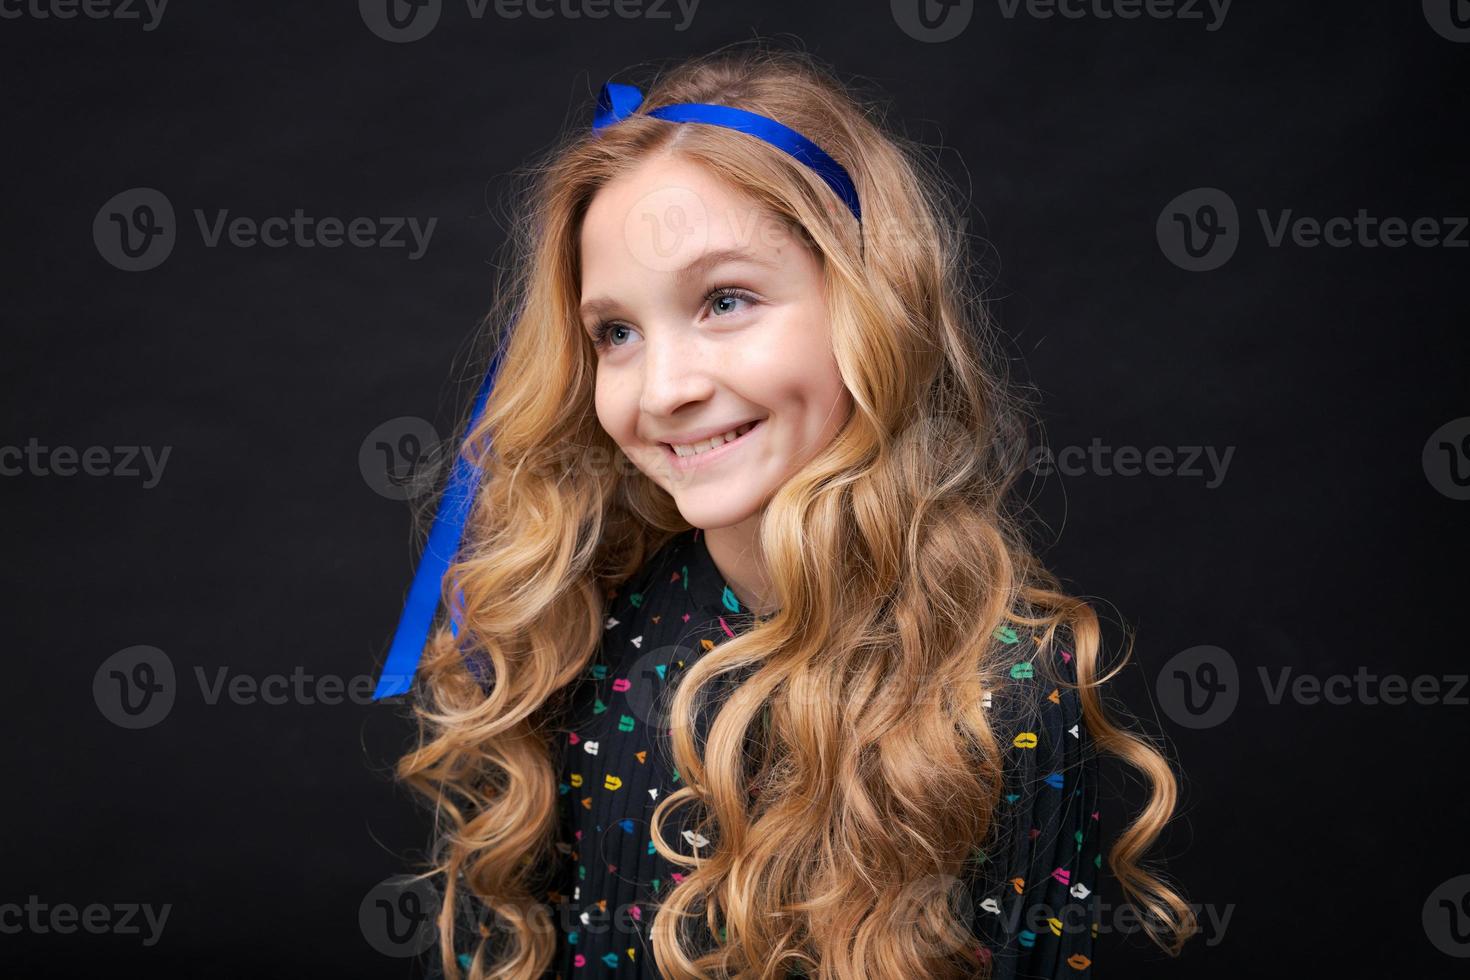 lächelndes hübsches kleines kaukasisches Mädchen 12-10, das auf schwarzem Hintergrund aufwirft foto